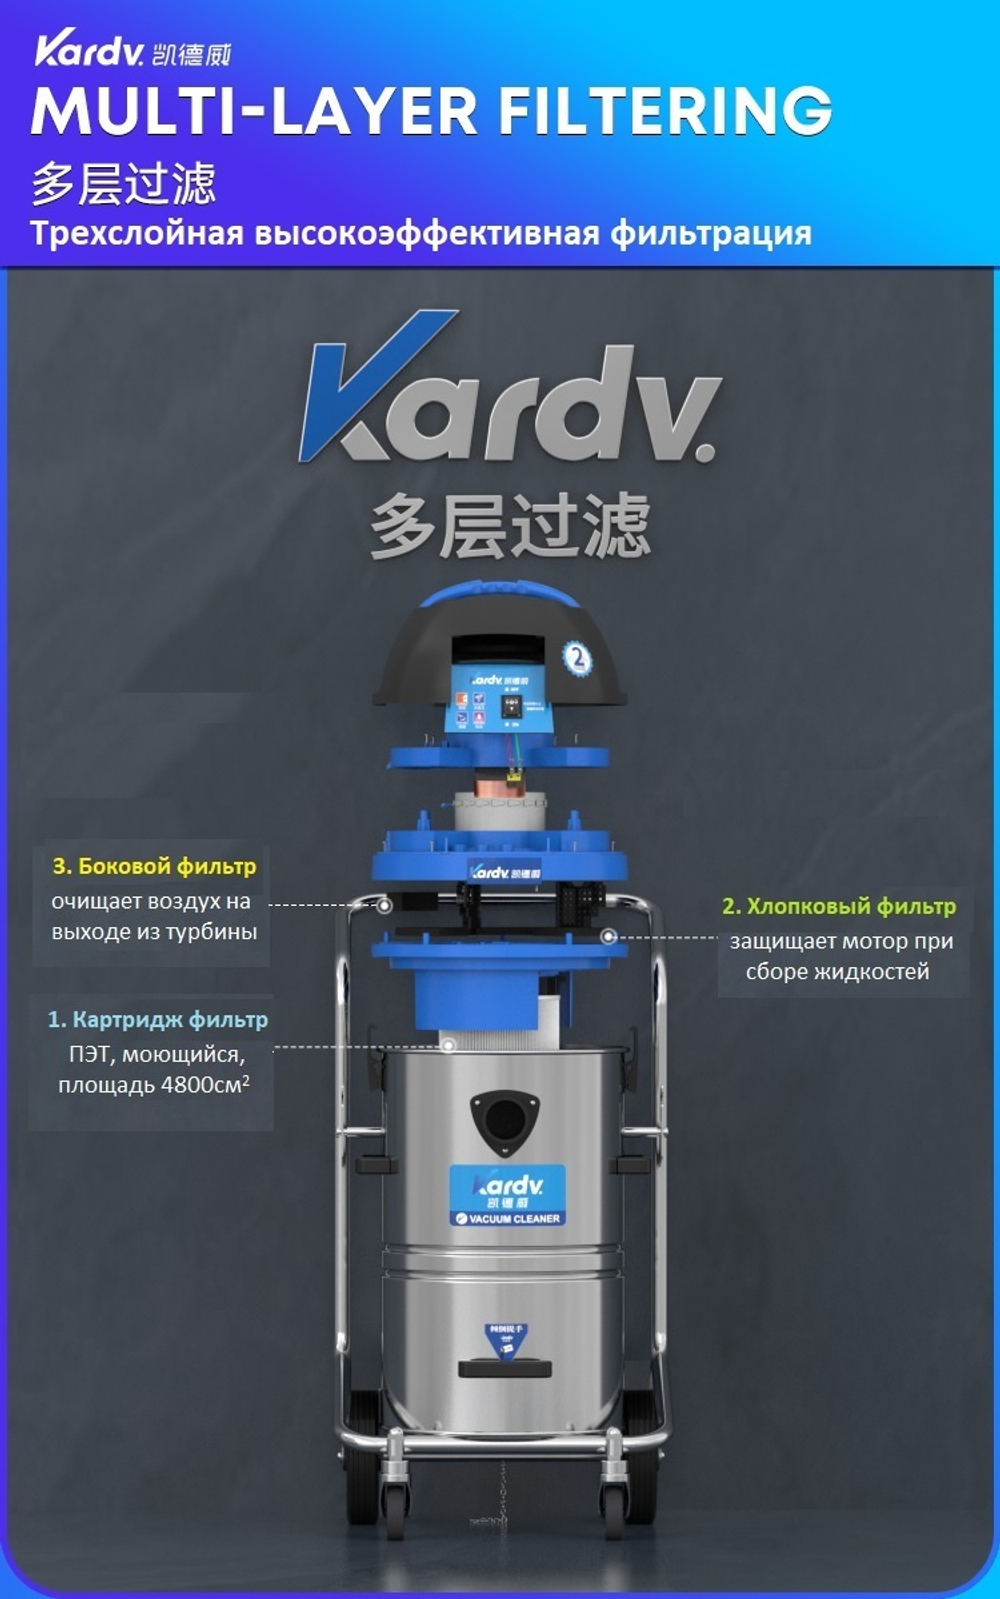 Промышленный пылесос Kardv DL-1245, 45л, 1200Вт